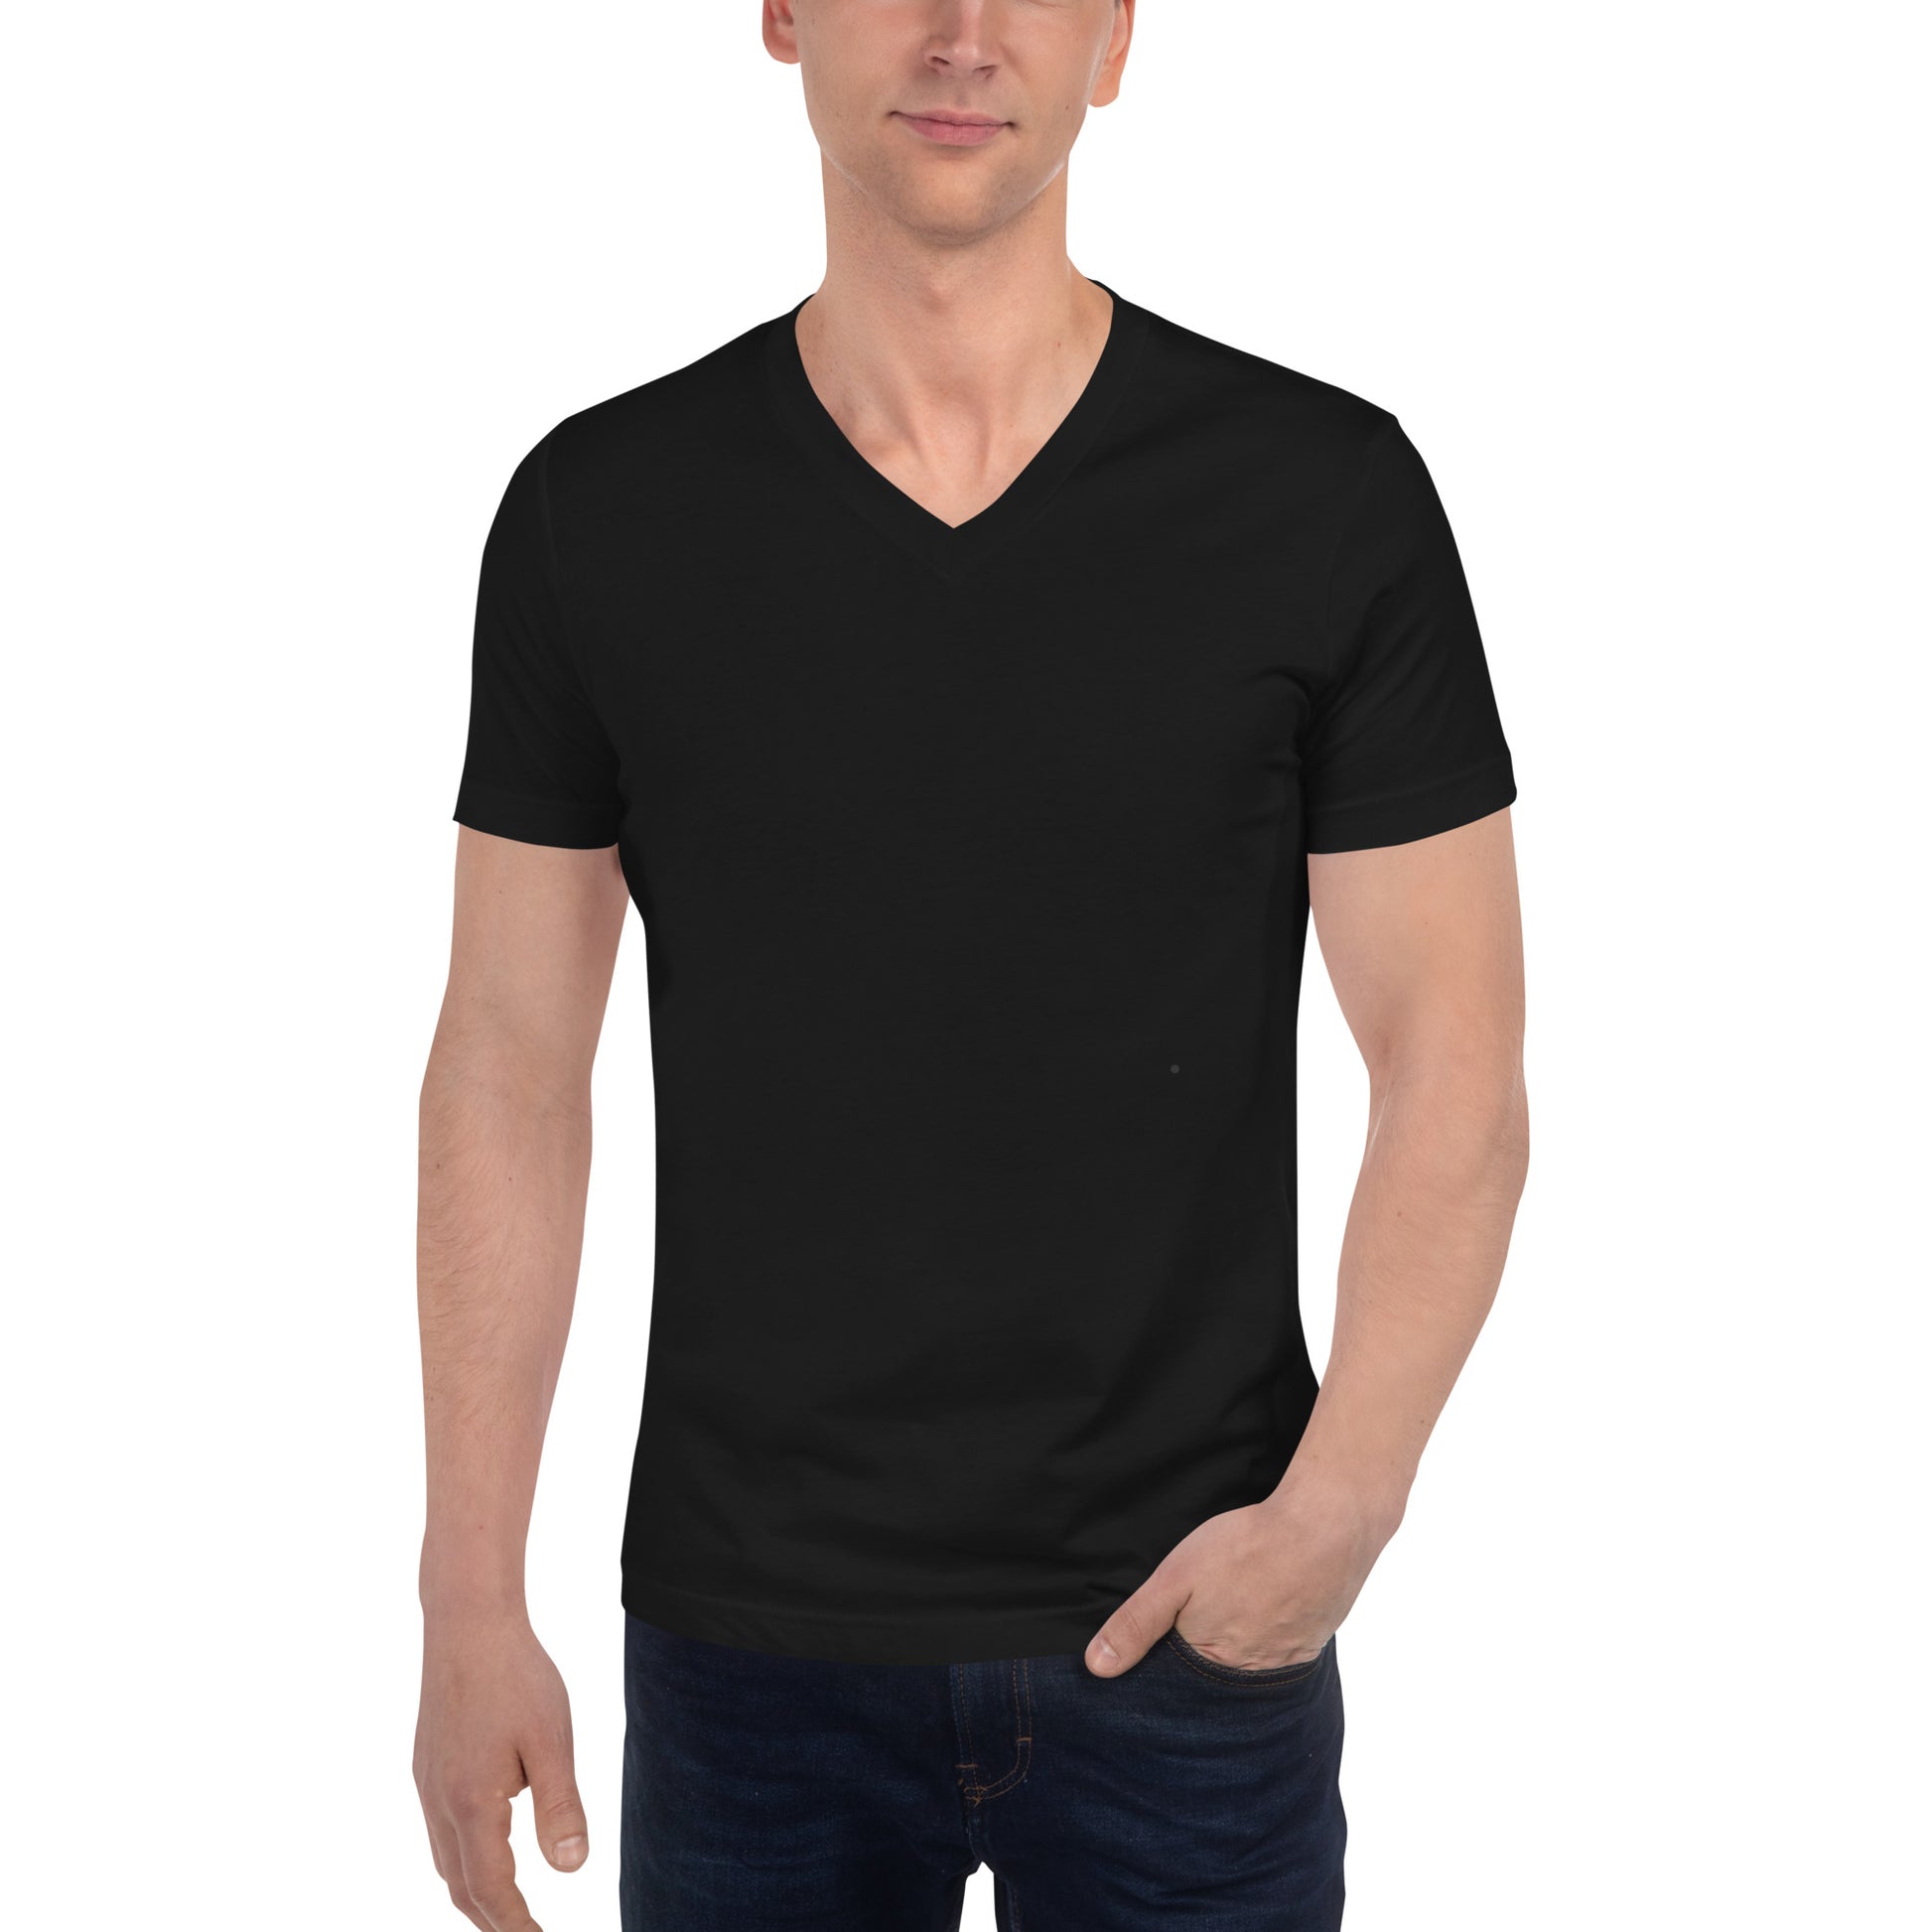 Camiseta Negra Cuello V - Elegancia y calidad en nuestra insignia. Descubre la perfección del algodón premium importado. envíos a Guatemala